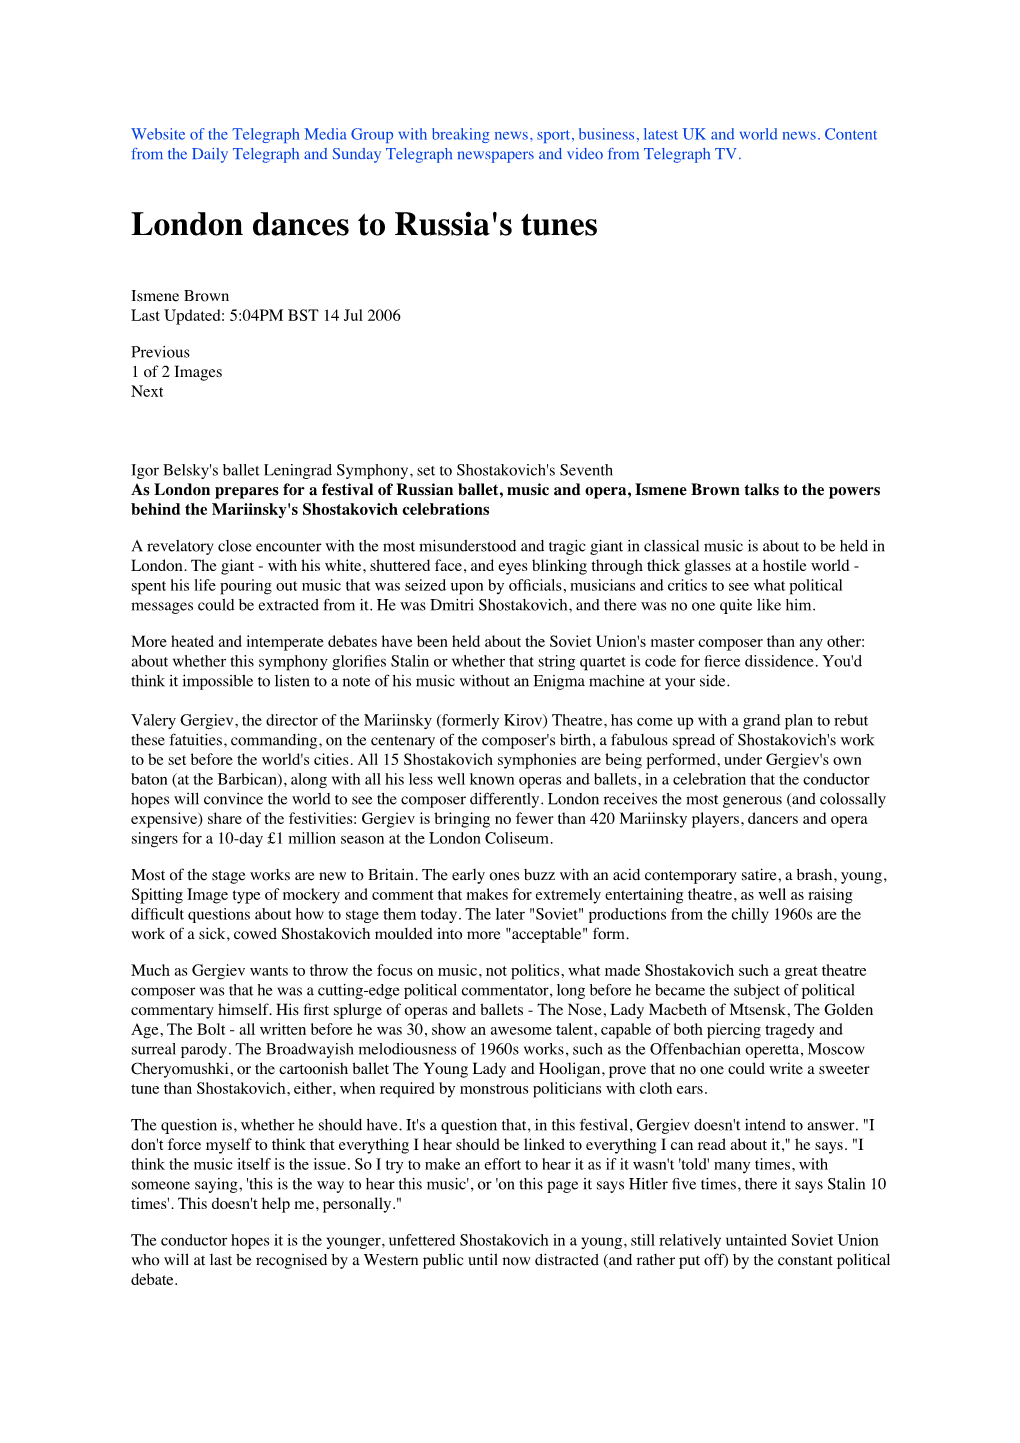 London Dances to Russia's Tunes Jul06 Copy